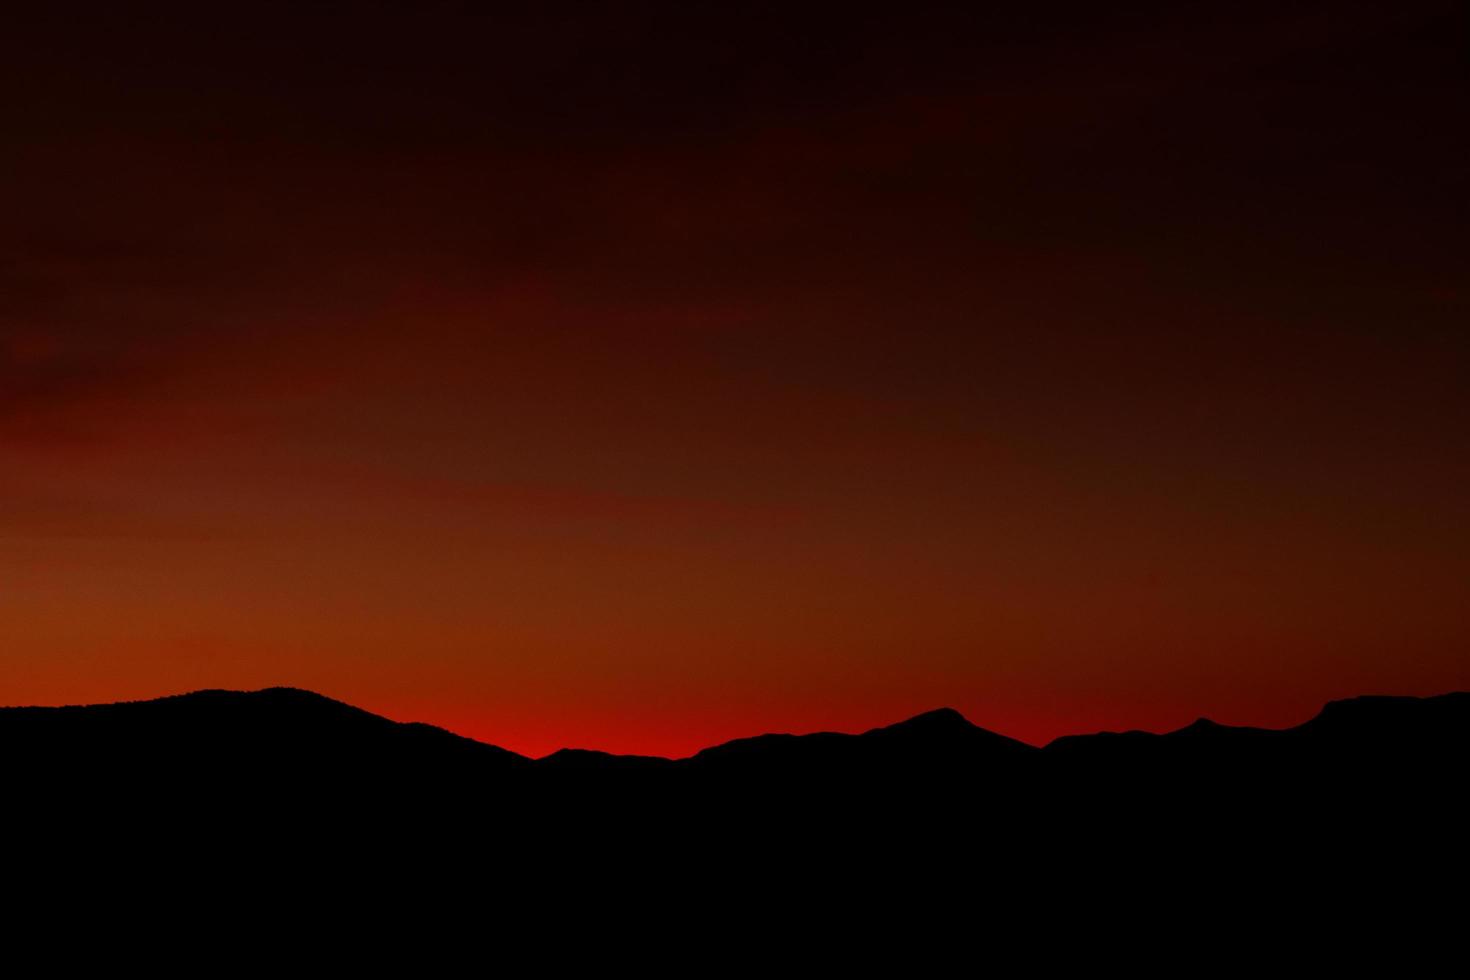 coucher de soleil rouge foncé photo